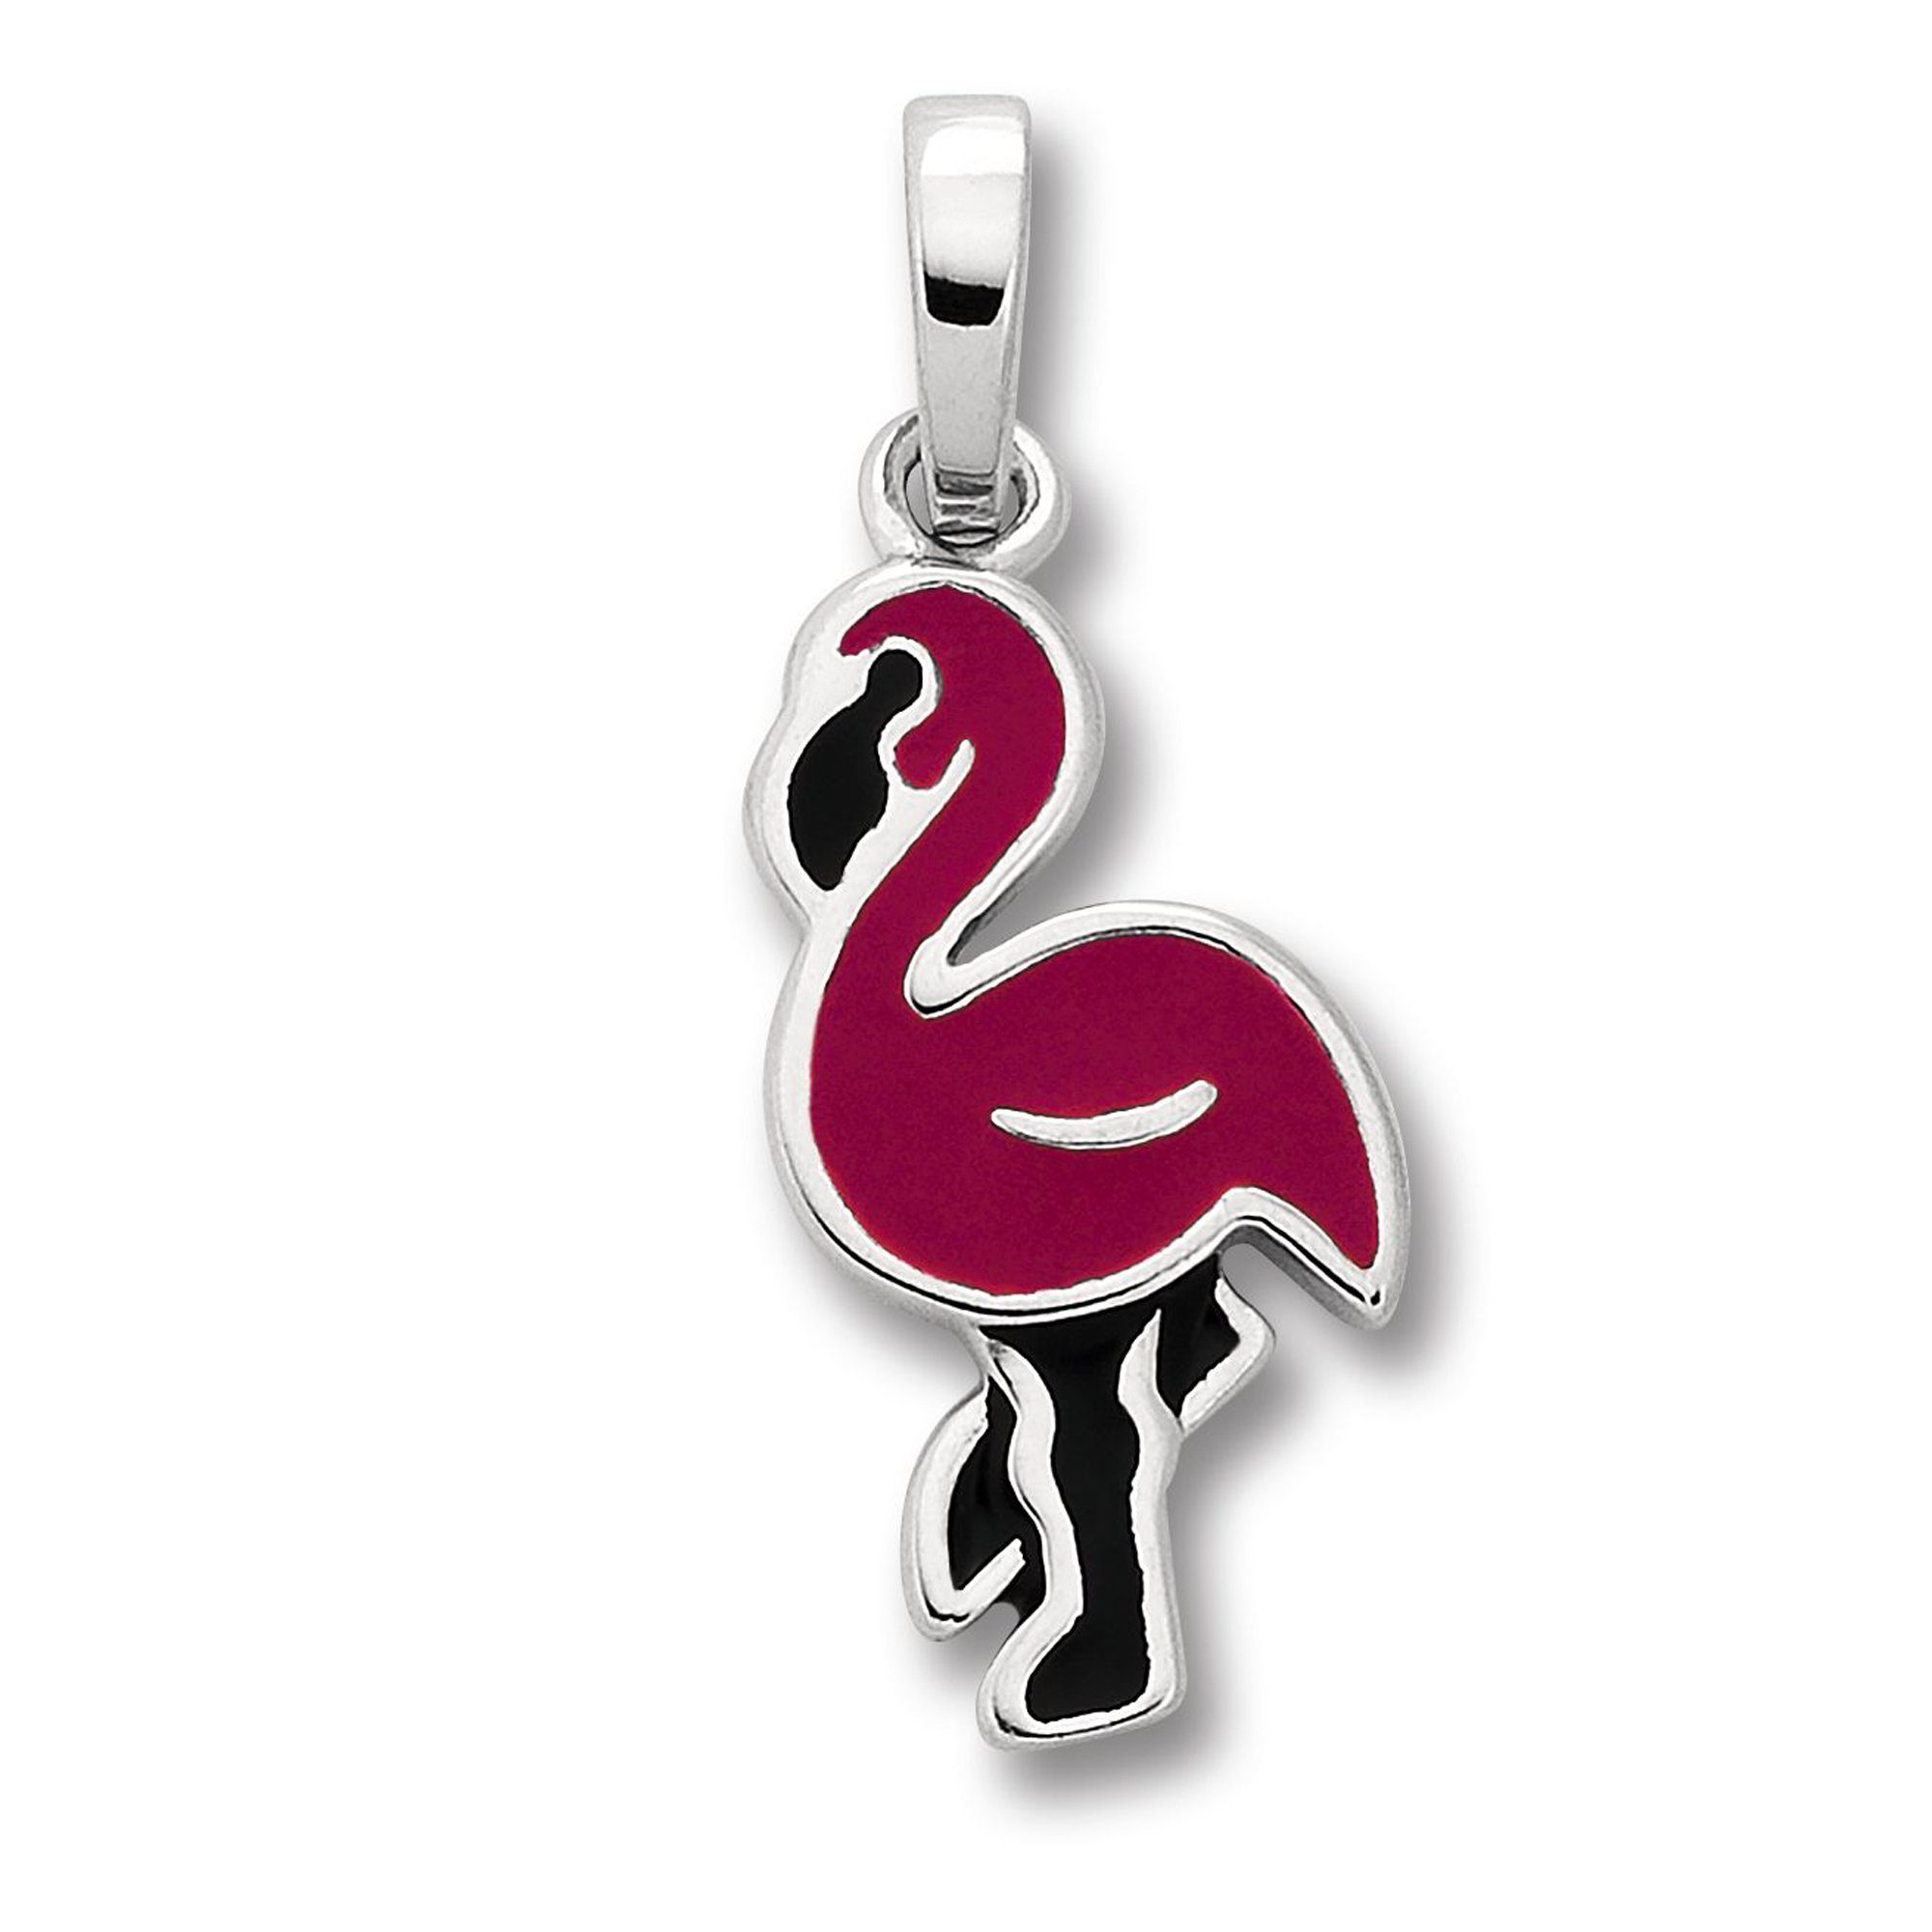 【Echt】 ONE ELEMENT Kettenanhänger Flamingo Anhänger Silber, Flamingo Schmuck aus Damen 925 Silber